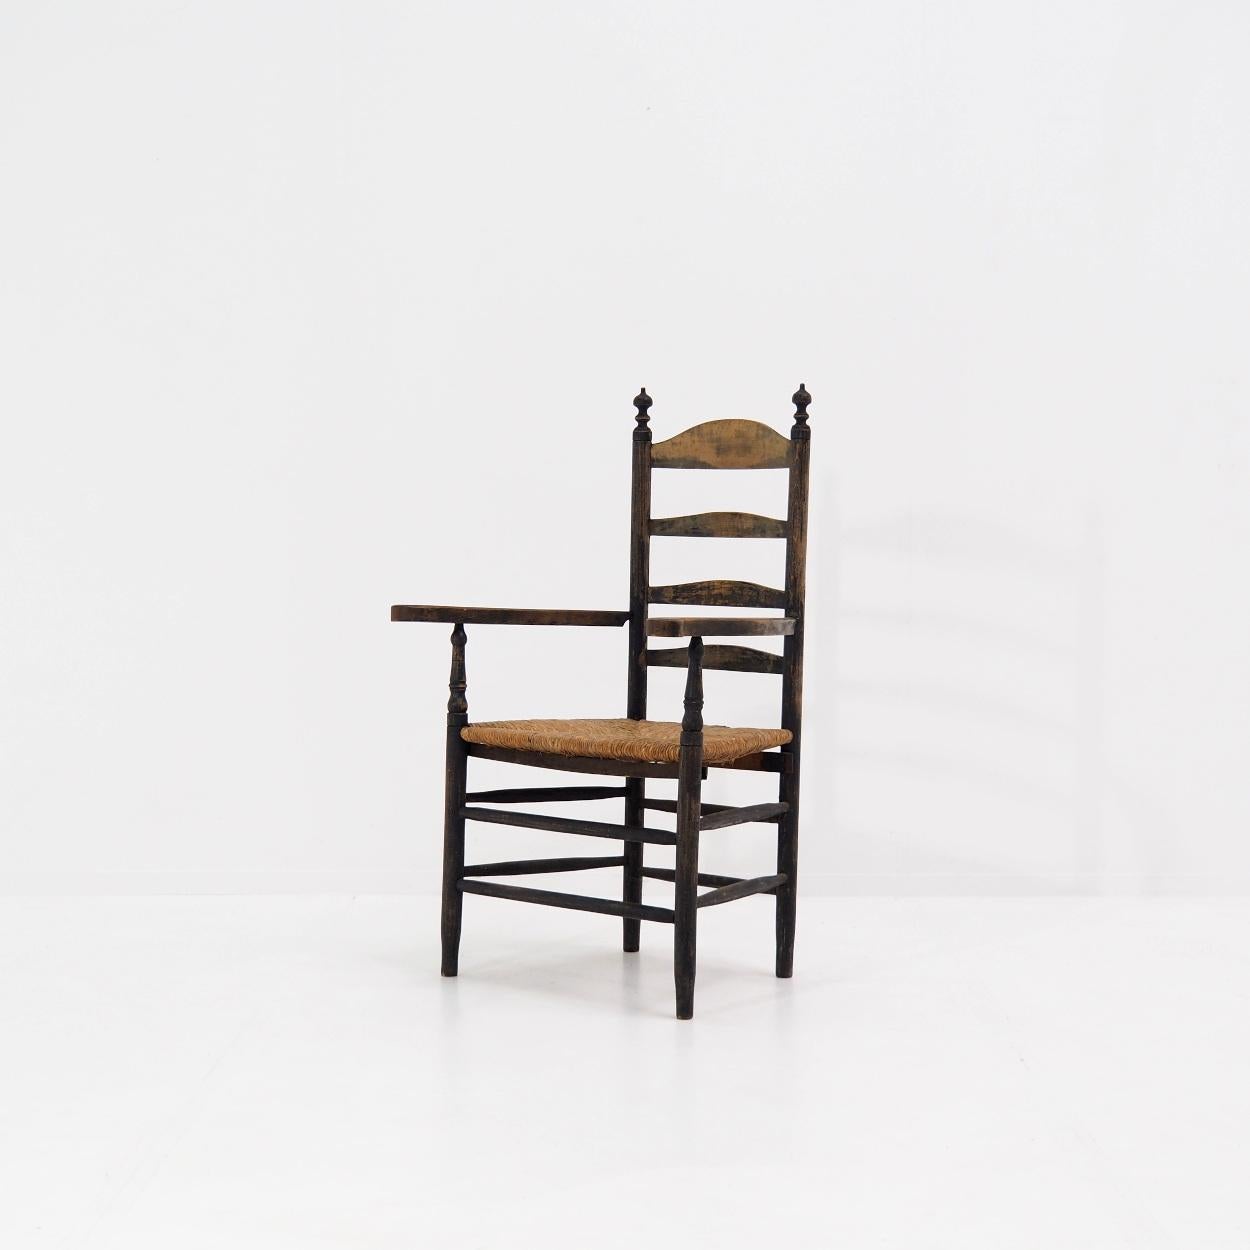 Chaise ancienne à dossier en échelle des Pays-Bas.

La chaise a conservé sa patine d'origine due à l'usure naturelle, avec une peinture d'une couleur sombre, presque noire. En même temps, le bois d'origine est visible à d'autres endroits.

La